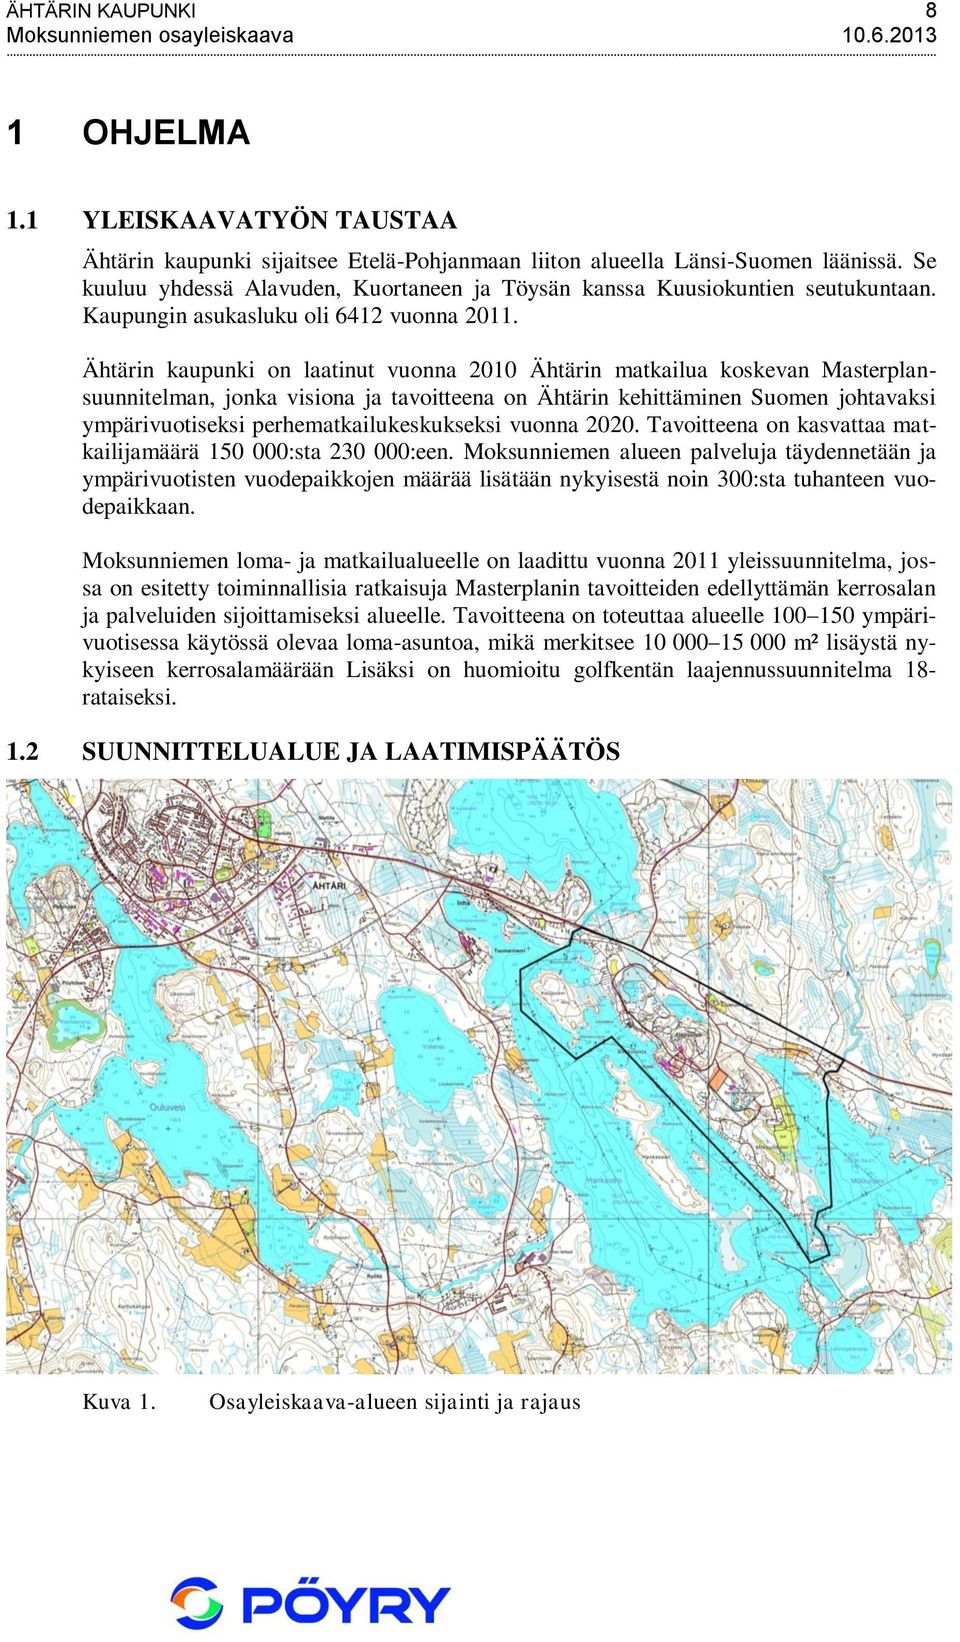 Ähtärin kaupunki on laatinut vuonna 2010 Ähtärin matkailua koskevan Masterplansuunnitelman, jonka visiona ja tavoitteena on Ähtärin kehittäminen Suomen johtavaksi ympärivuotiseksi